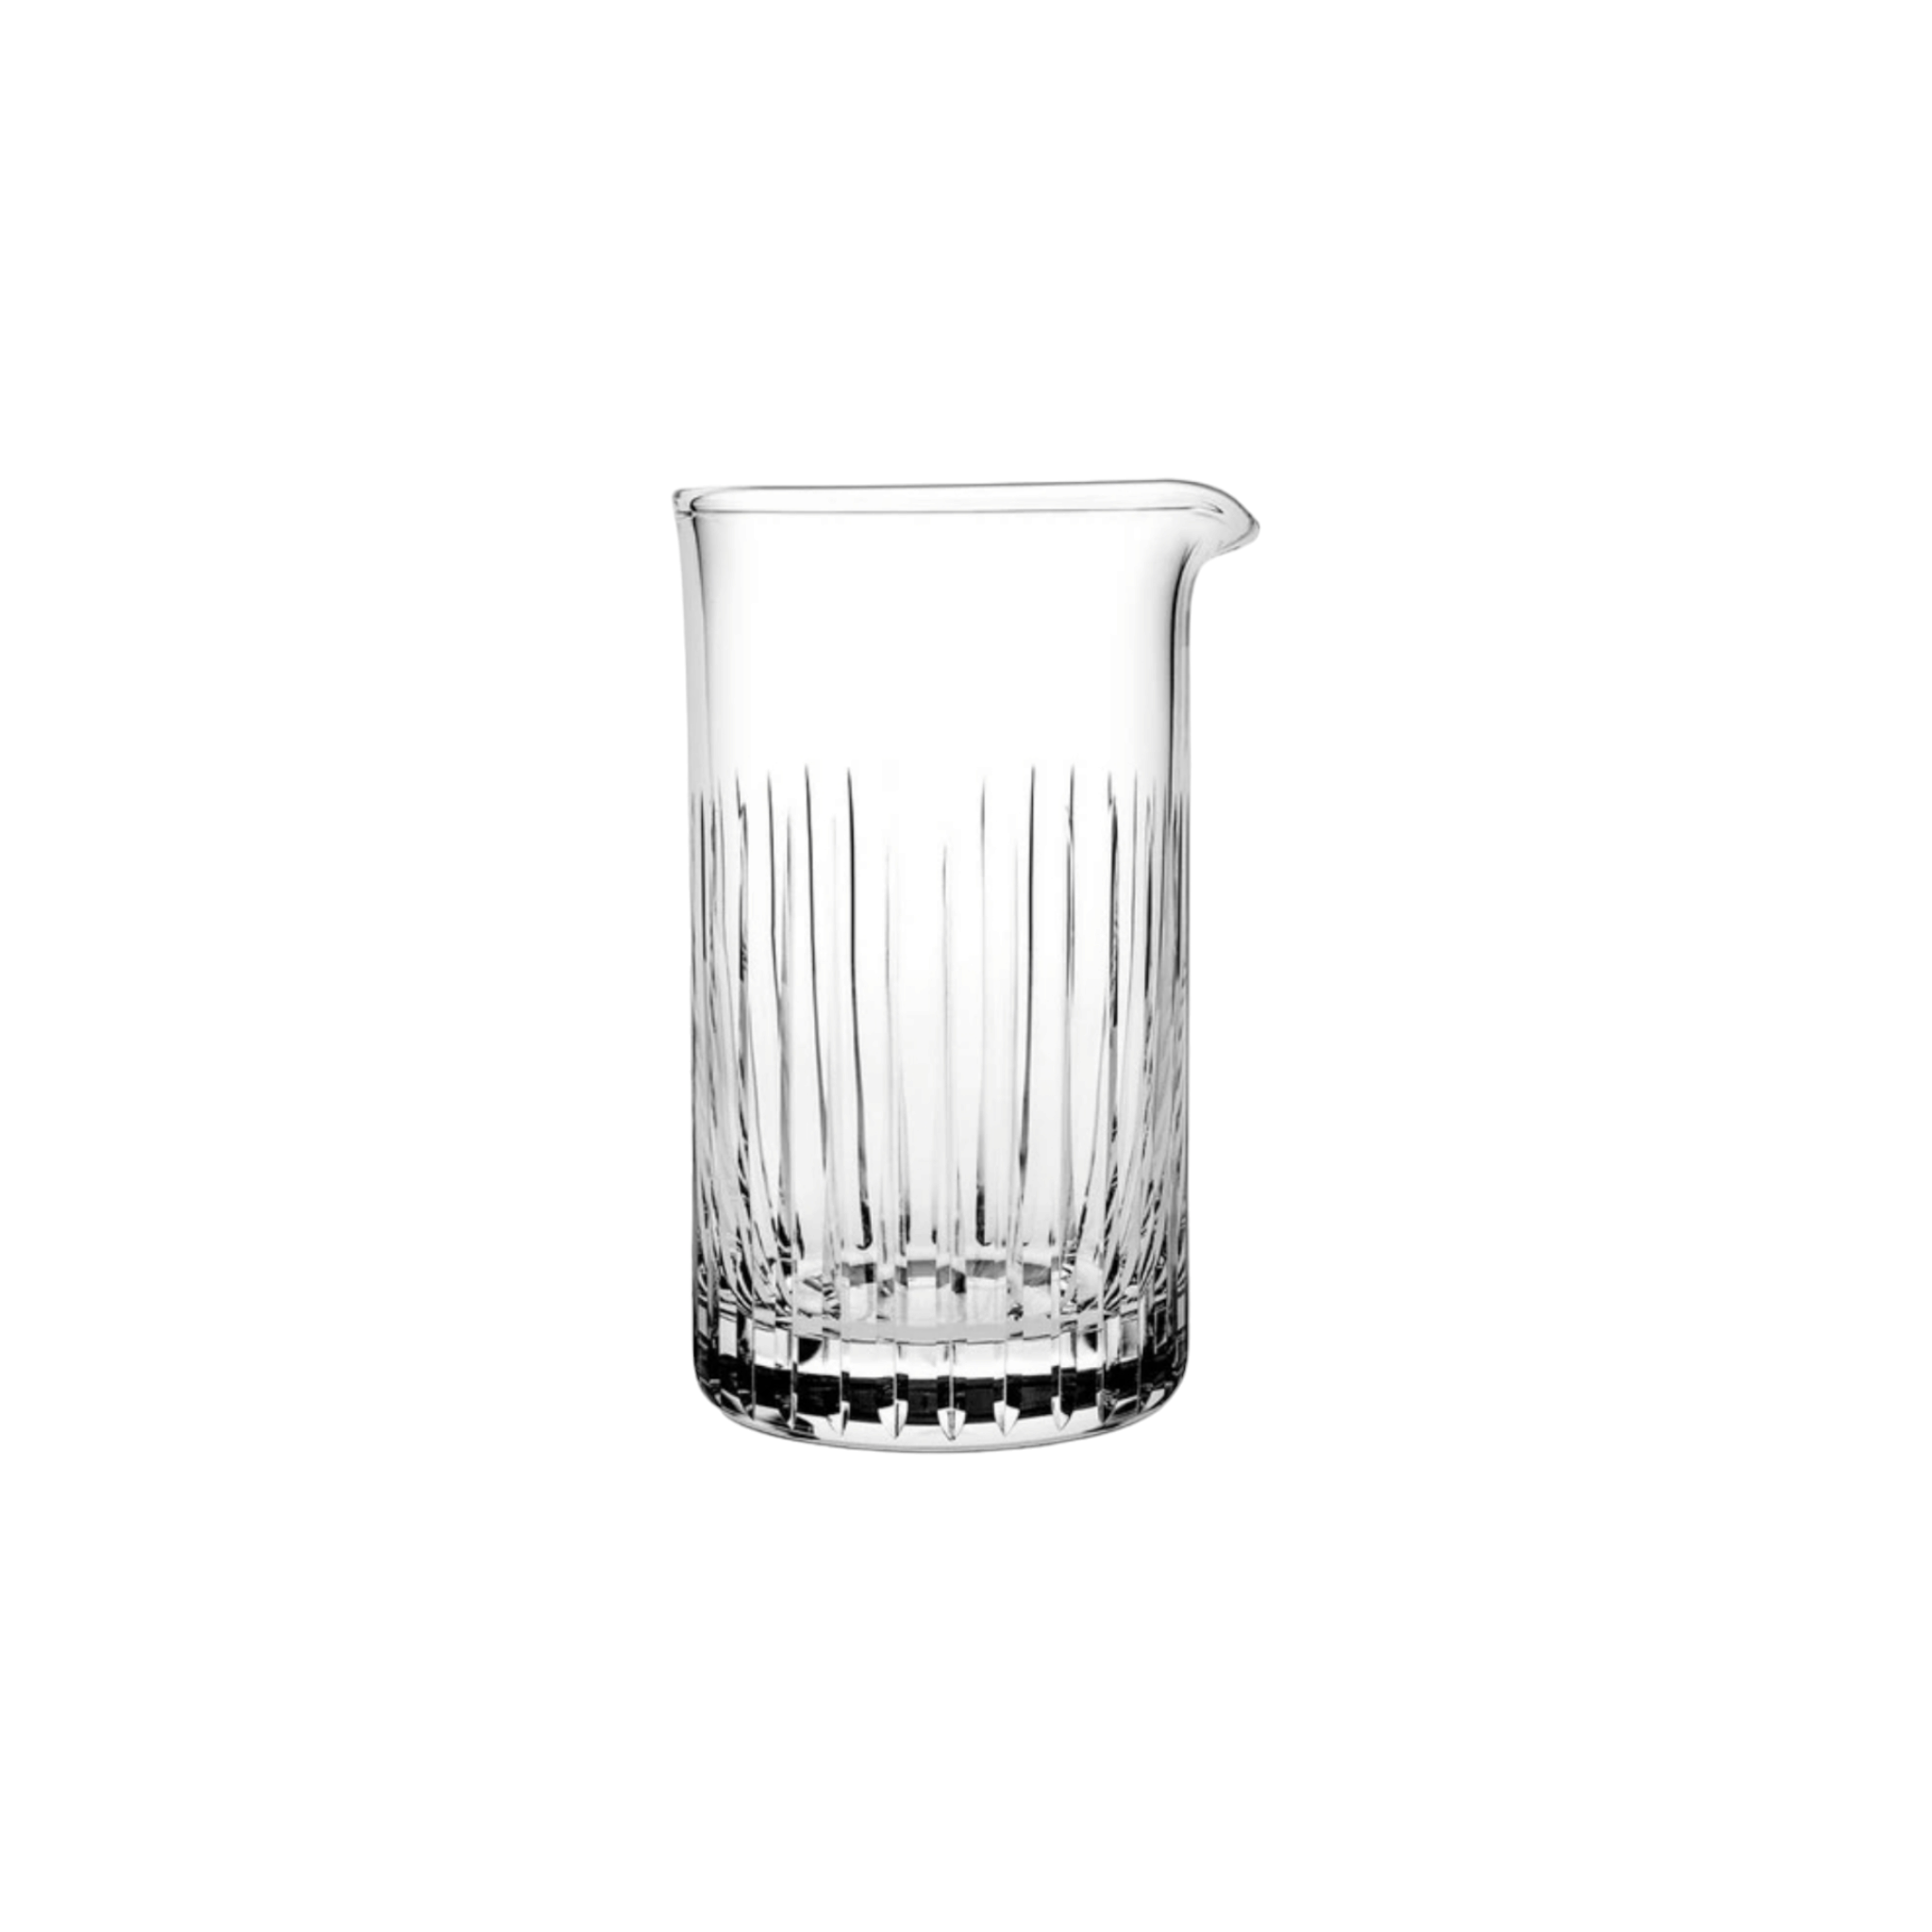 Pasabahce Nude Mixology Mixing Cocktail  Glass Tumbler Cup 650ml 6pcs